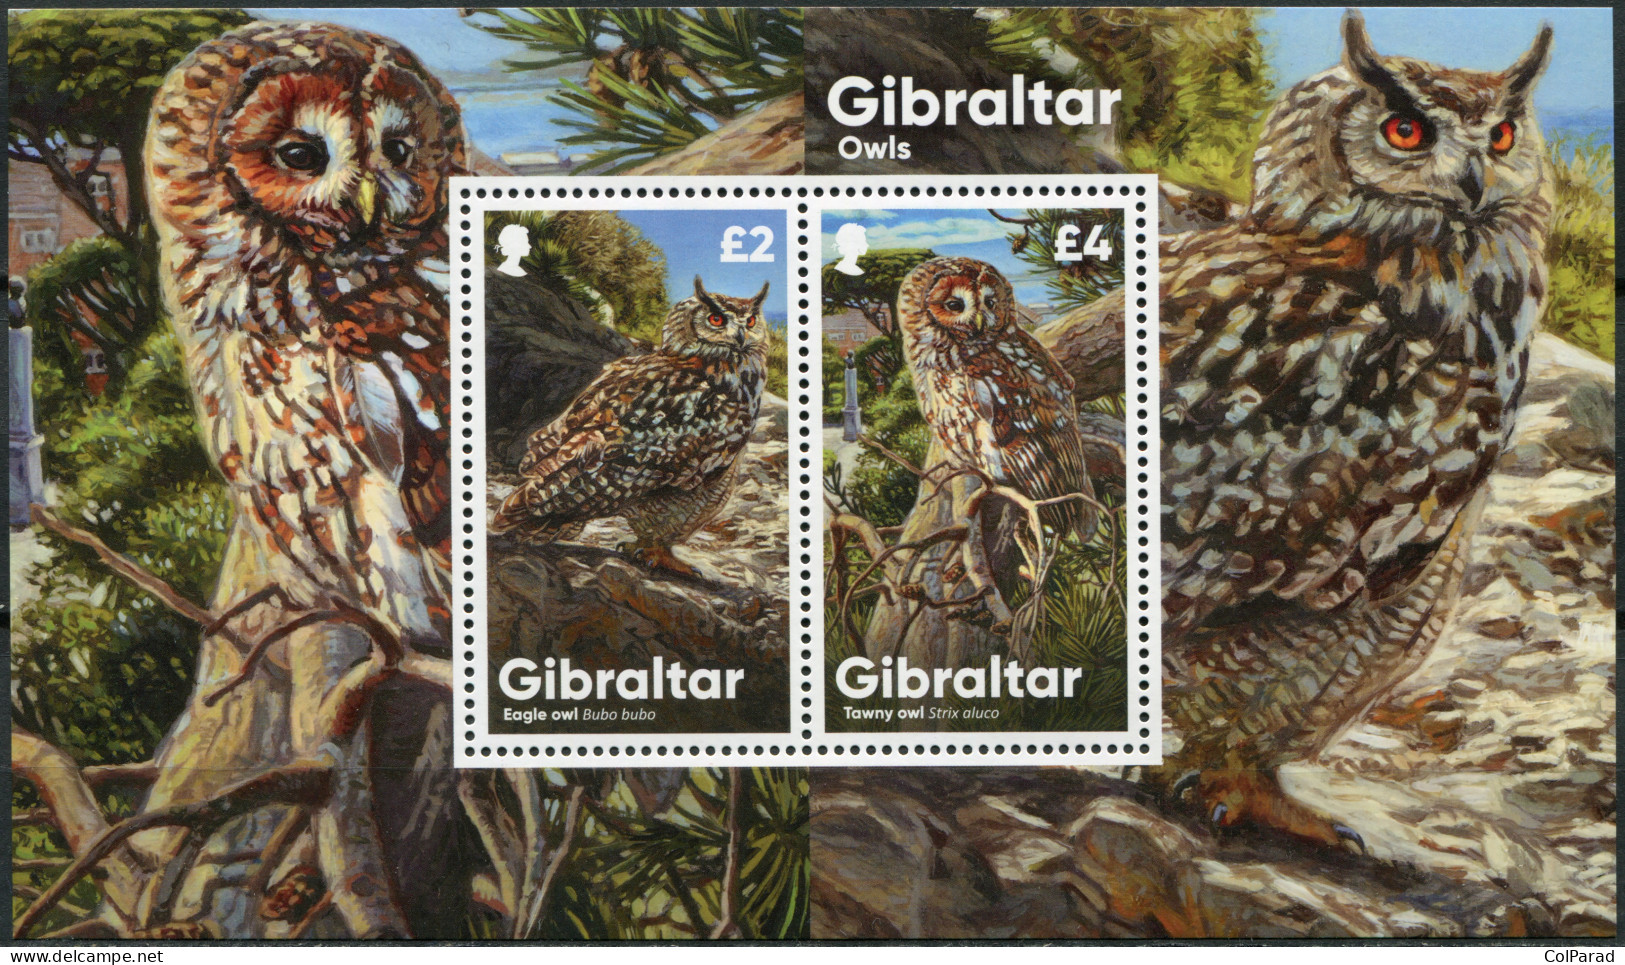 GIBRALTAR - 2020 - SOUVENIR SHEET MNH ** - Owls - Gibraltar